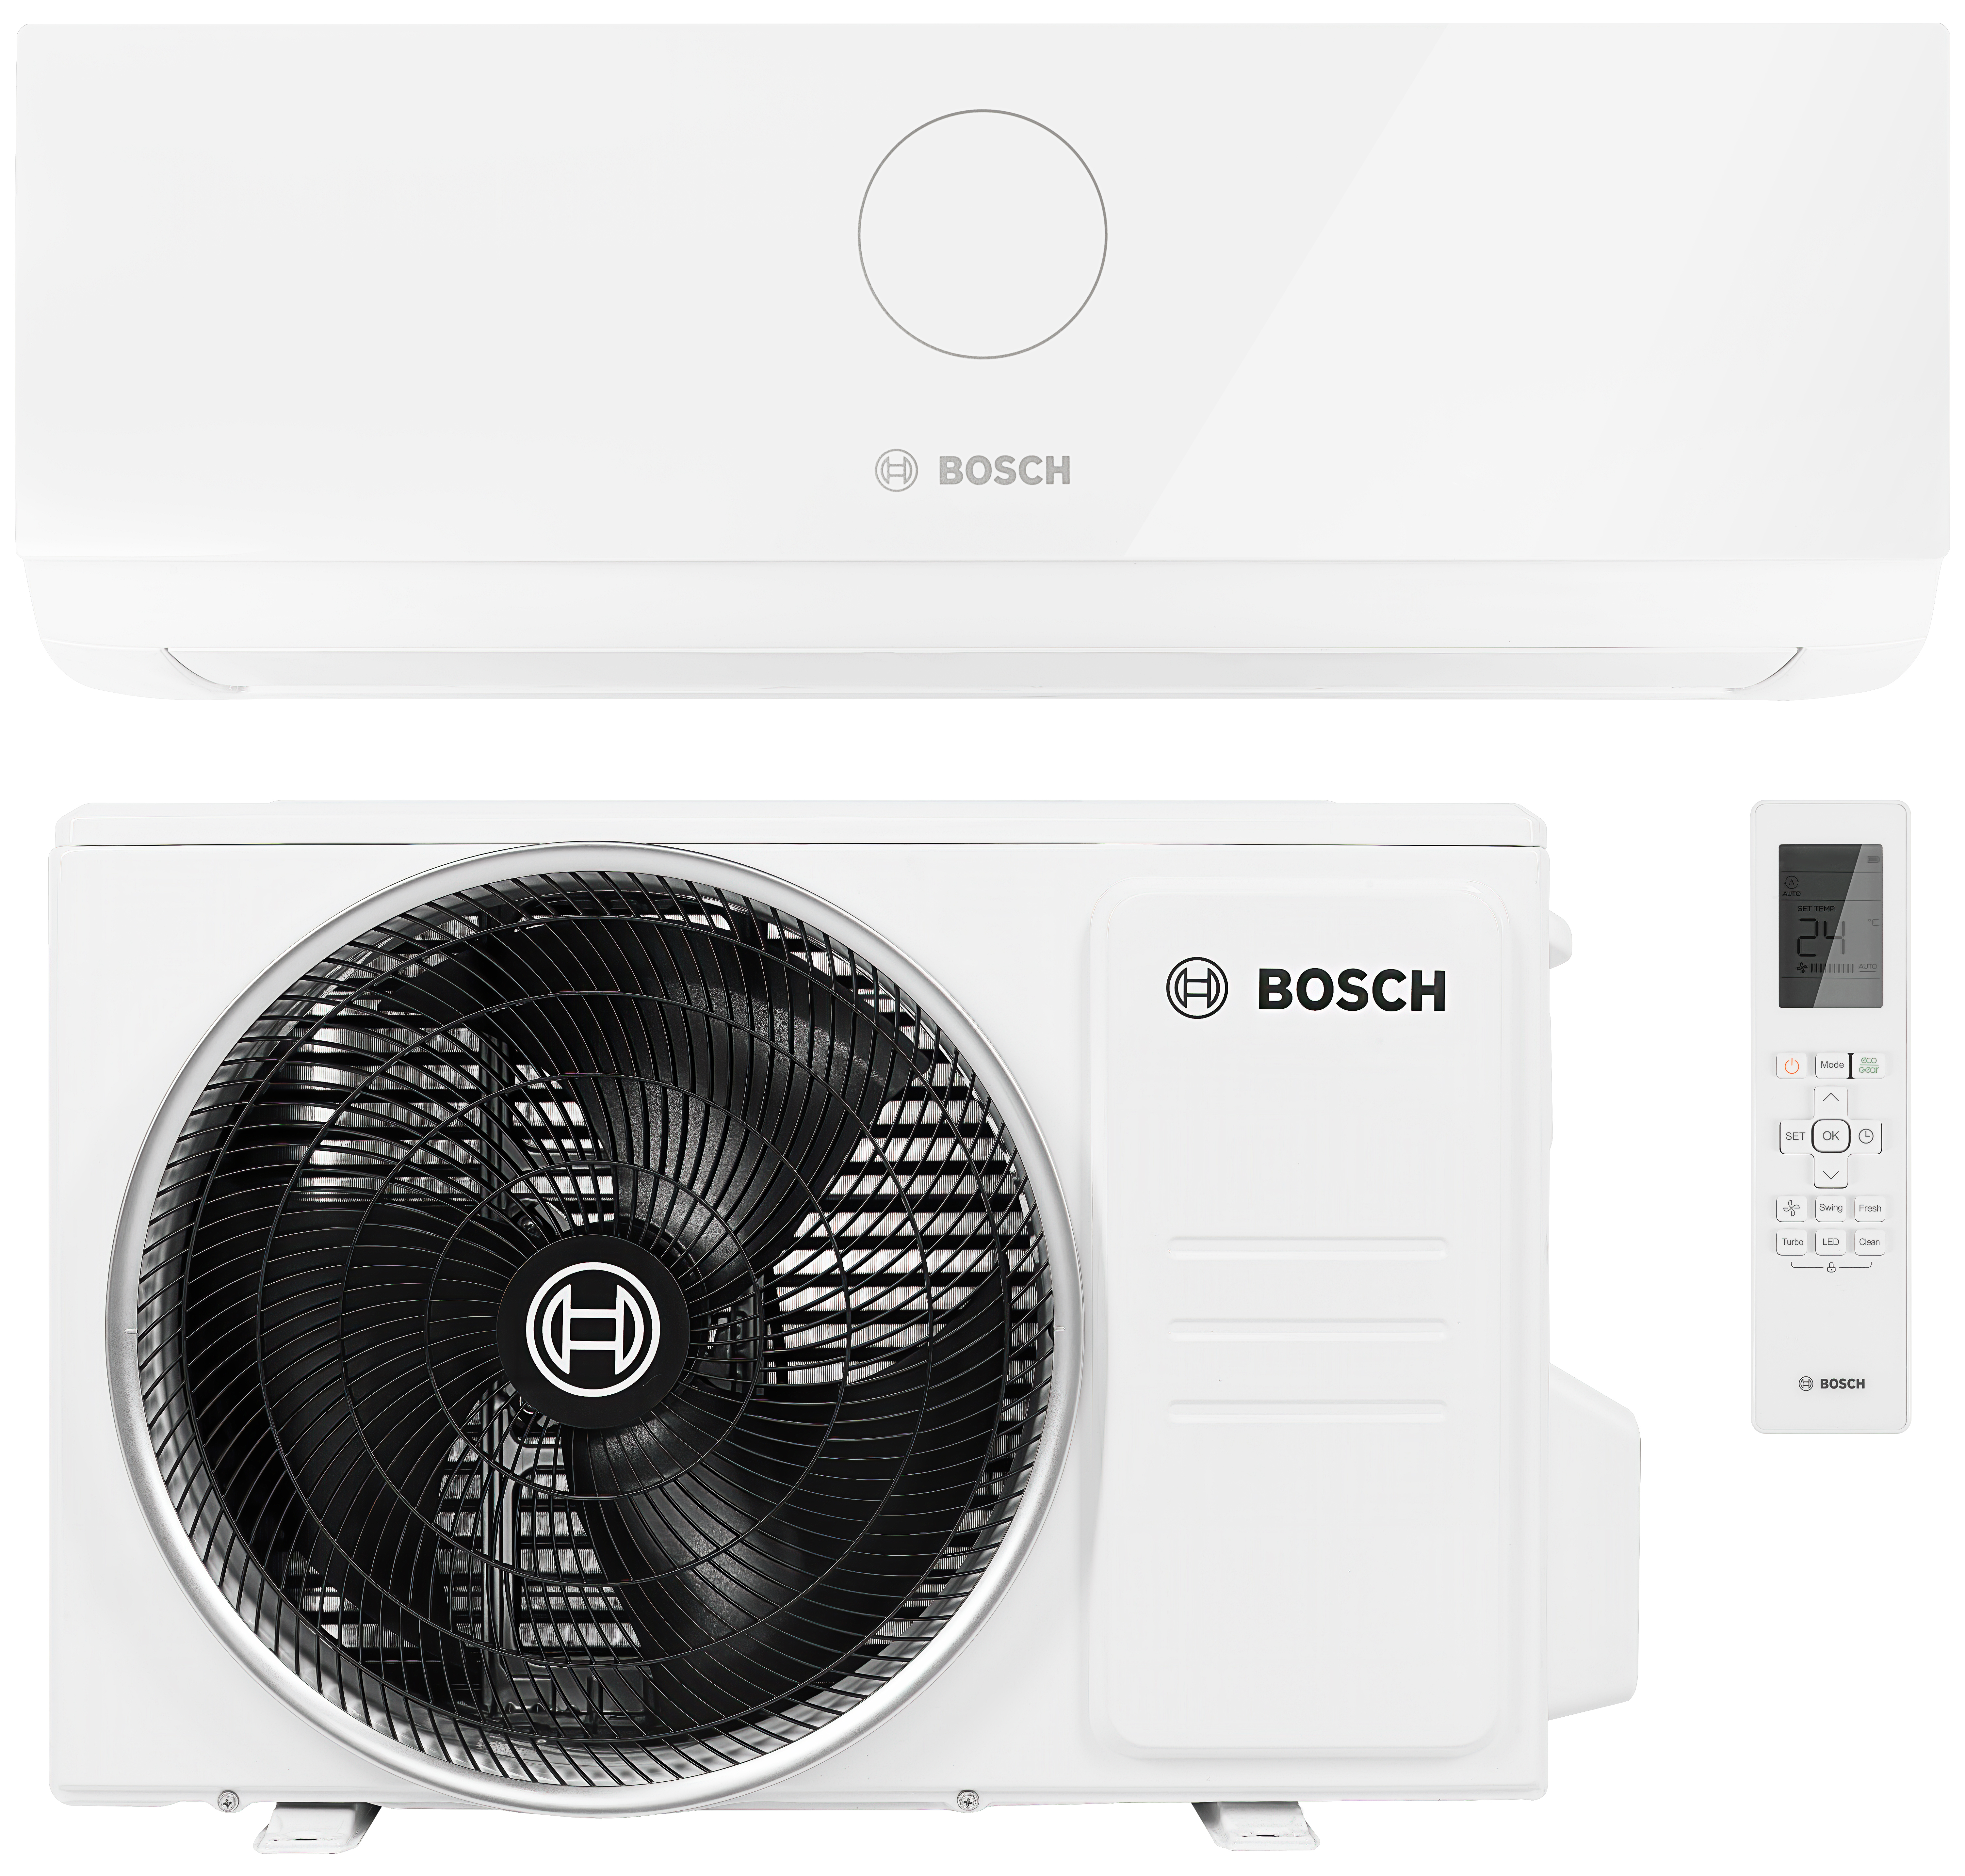 Bosch Climate CL3000i 26 E